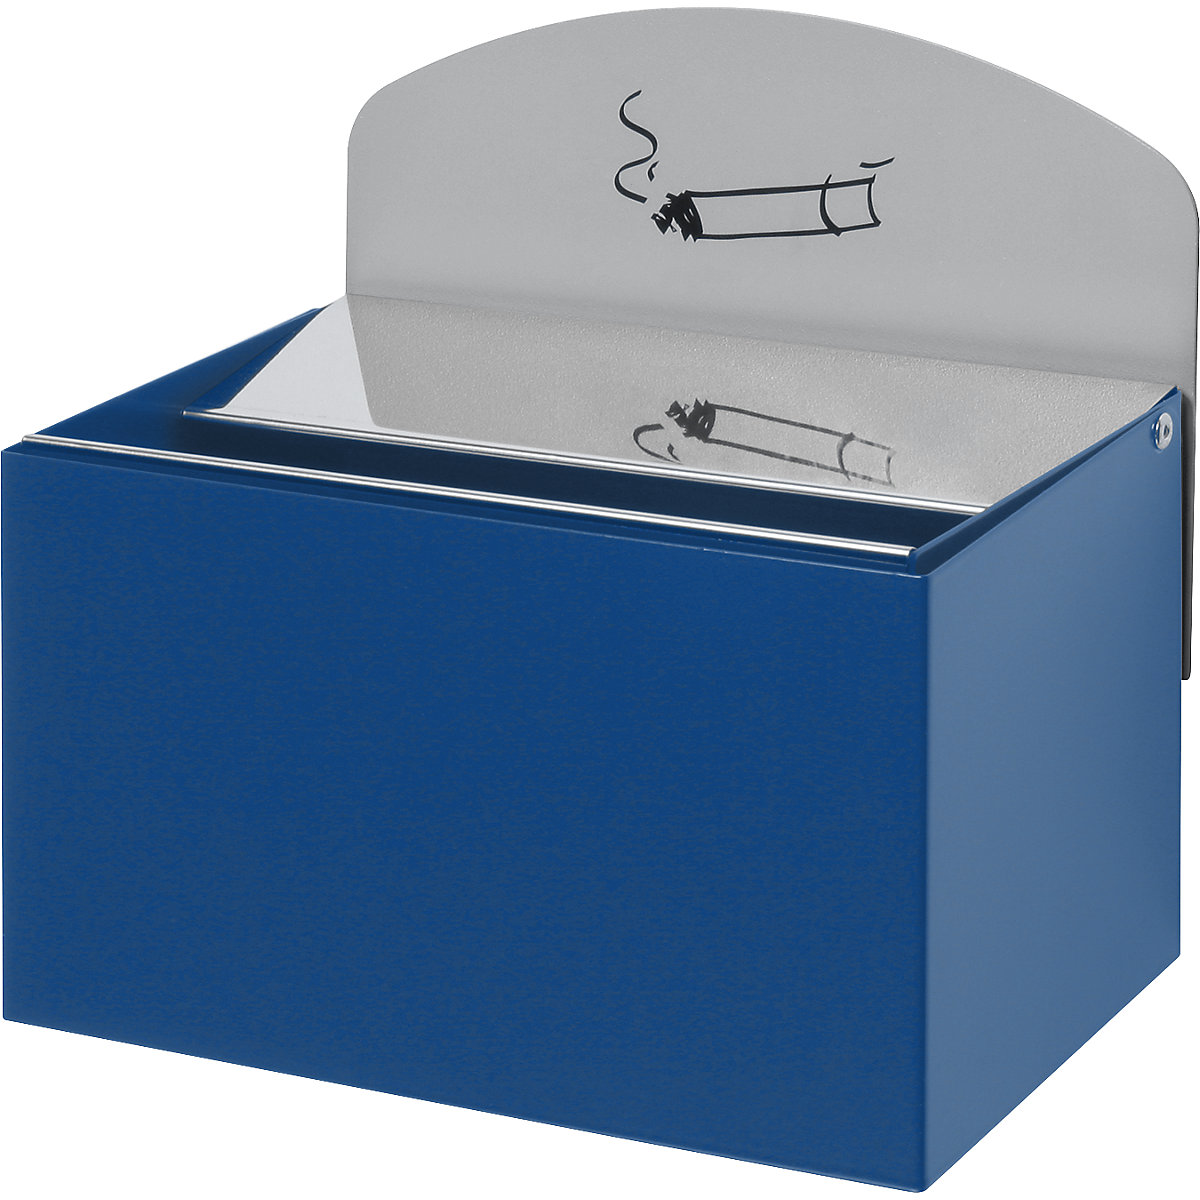 VAR – Nástěnný popelník s informační tabulkou, v x š x h 125 x 200 x 125 mm, ocelový plech, enciánová modrá